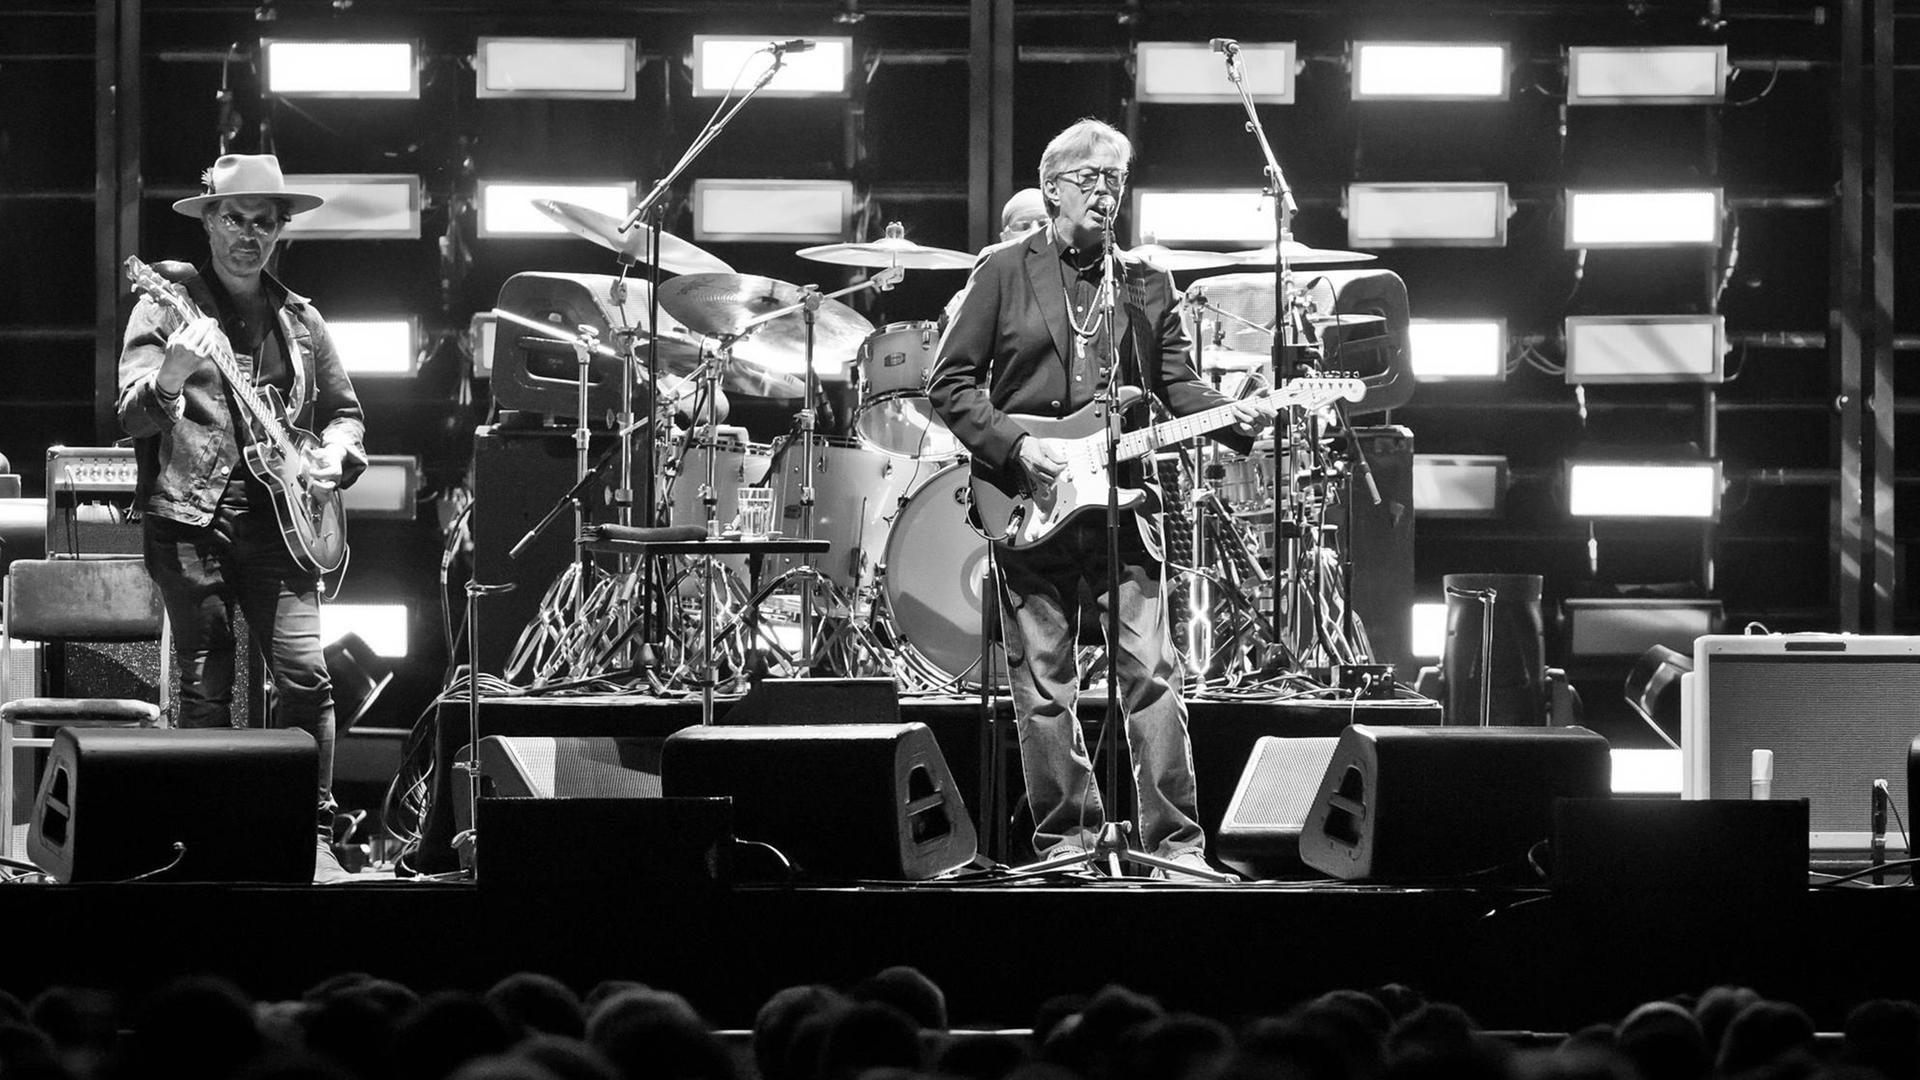 Der britische Musiker Eric Clapton mit seiner Band auf der Bühne in Berlin, 2019.